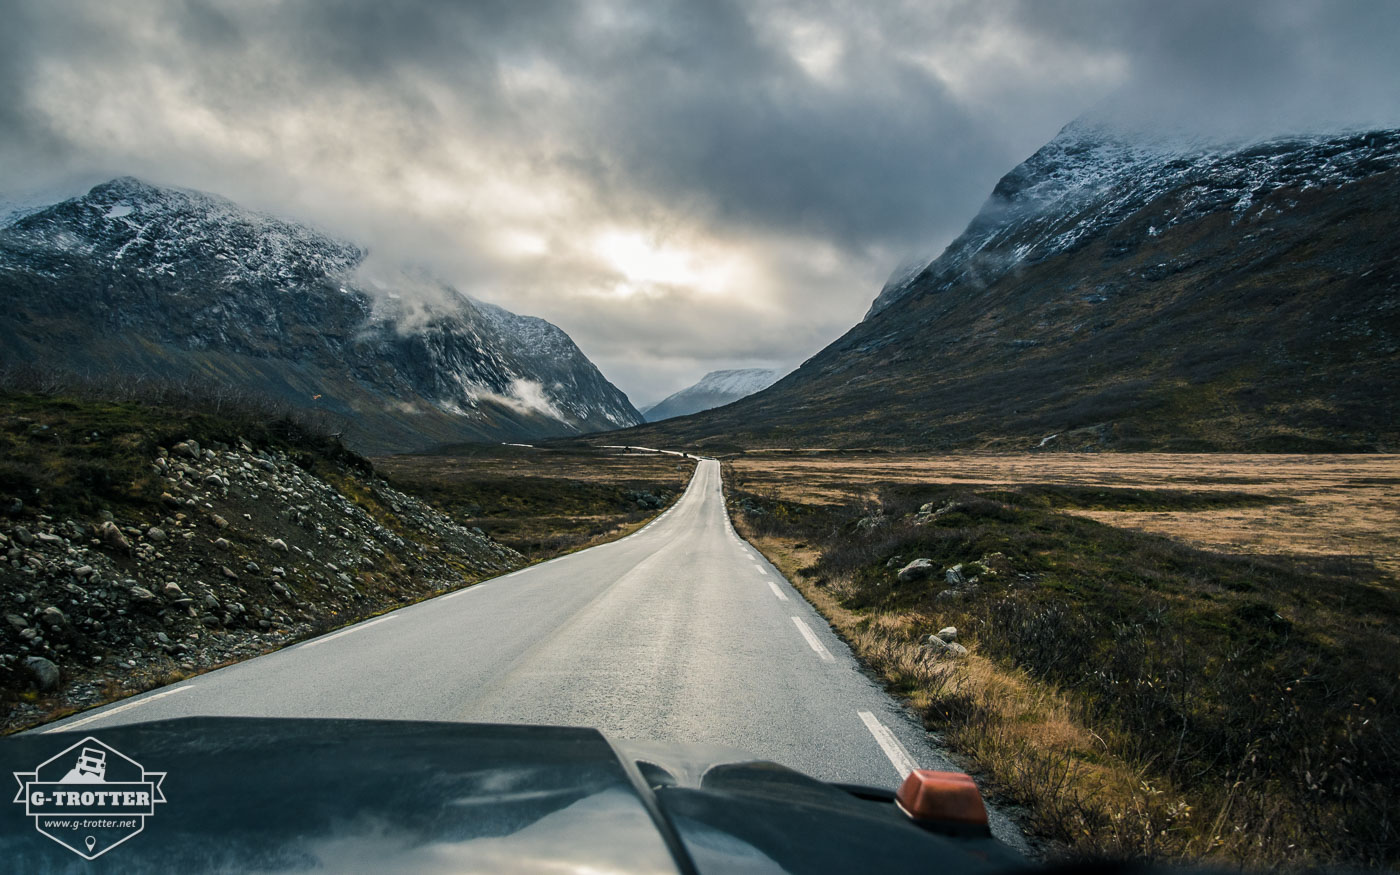 Bild 26 der Bildergalerie “Straßen von Norwegen”